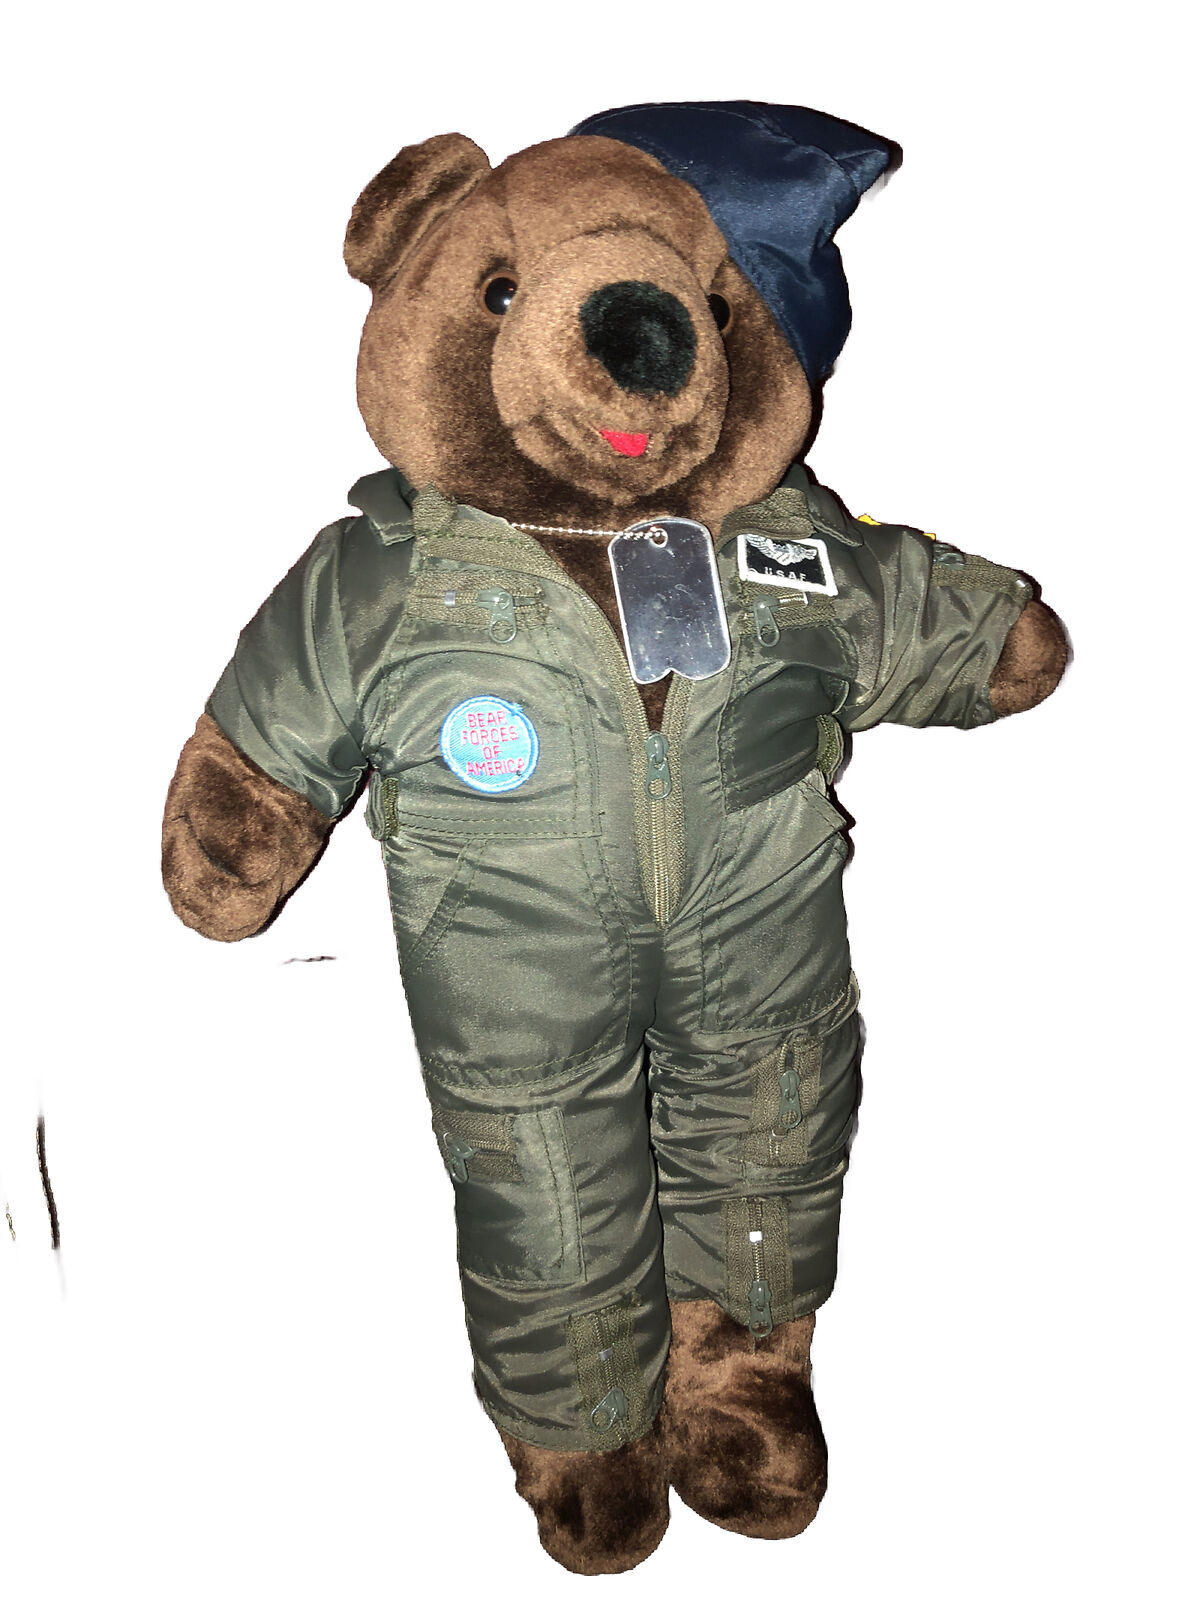 1989 USAF Plush Teddy Bear Military Forces